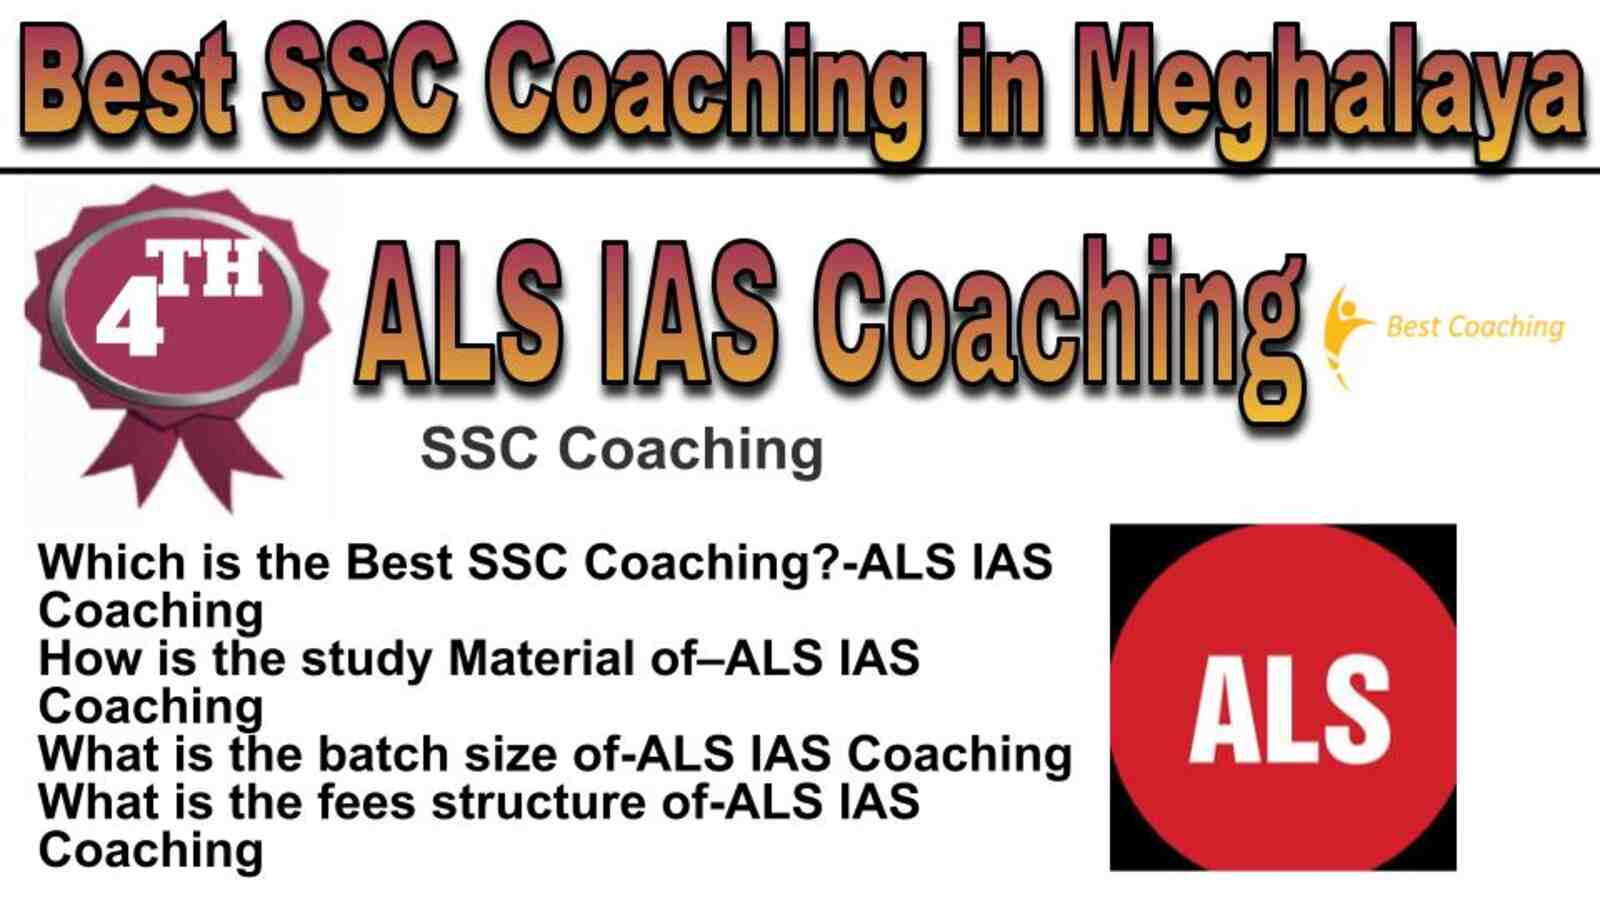 Rank 4 best SSC coaching in Meghalaya